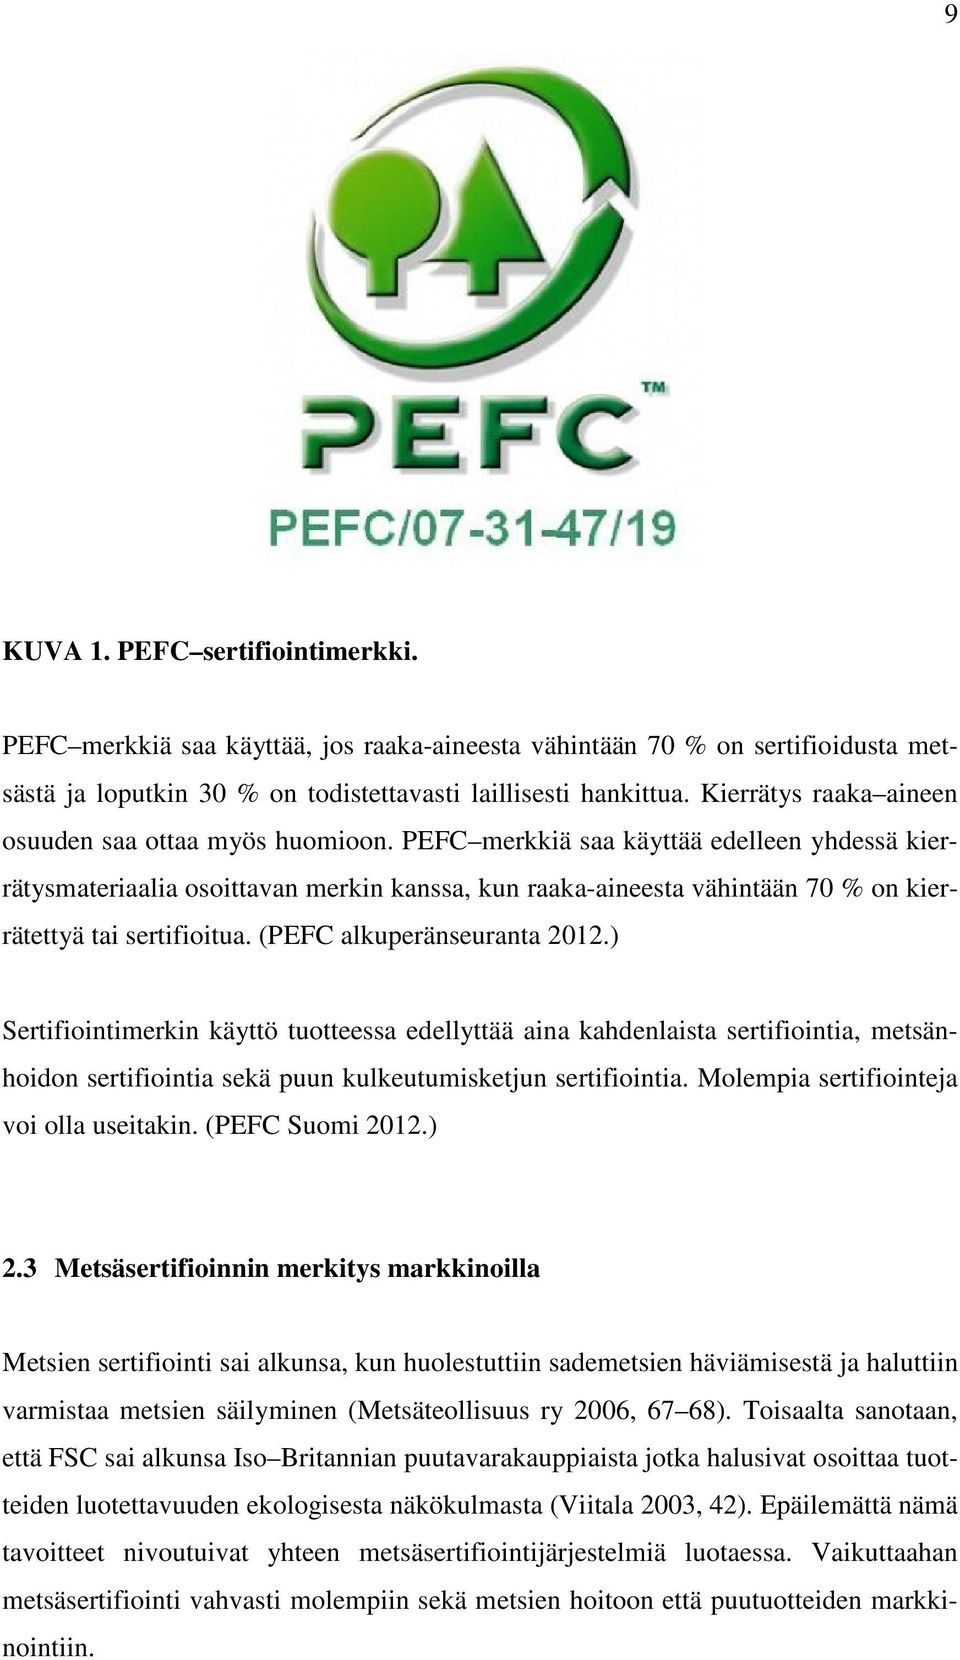 PEFC merkkiä saa käyttää edelleen yhdessä kierrätysmateriaalia osoittavan merkin kanssa, kun raaka-aineesta vähintään 70 % on kierrätettyä tai sertifioitua. (PEFC alkuperänseuranta 2012.